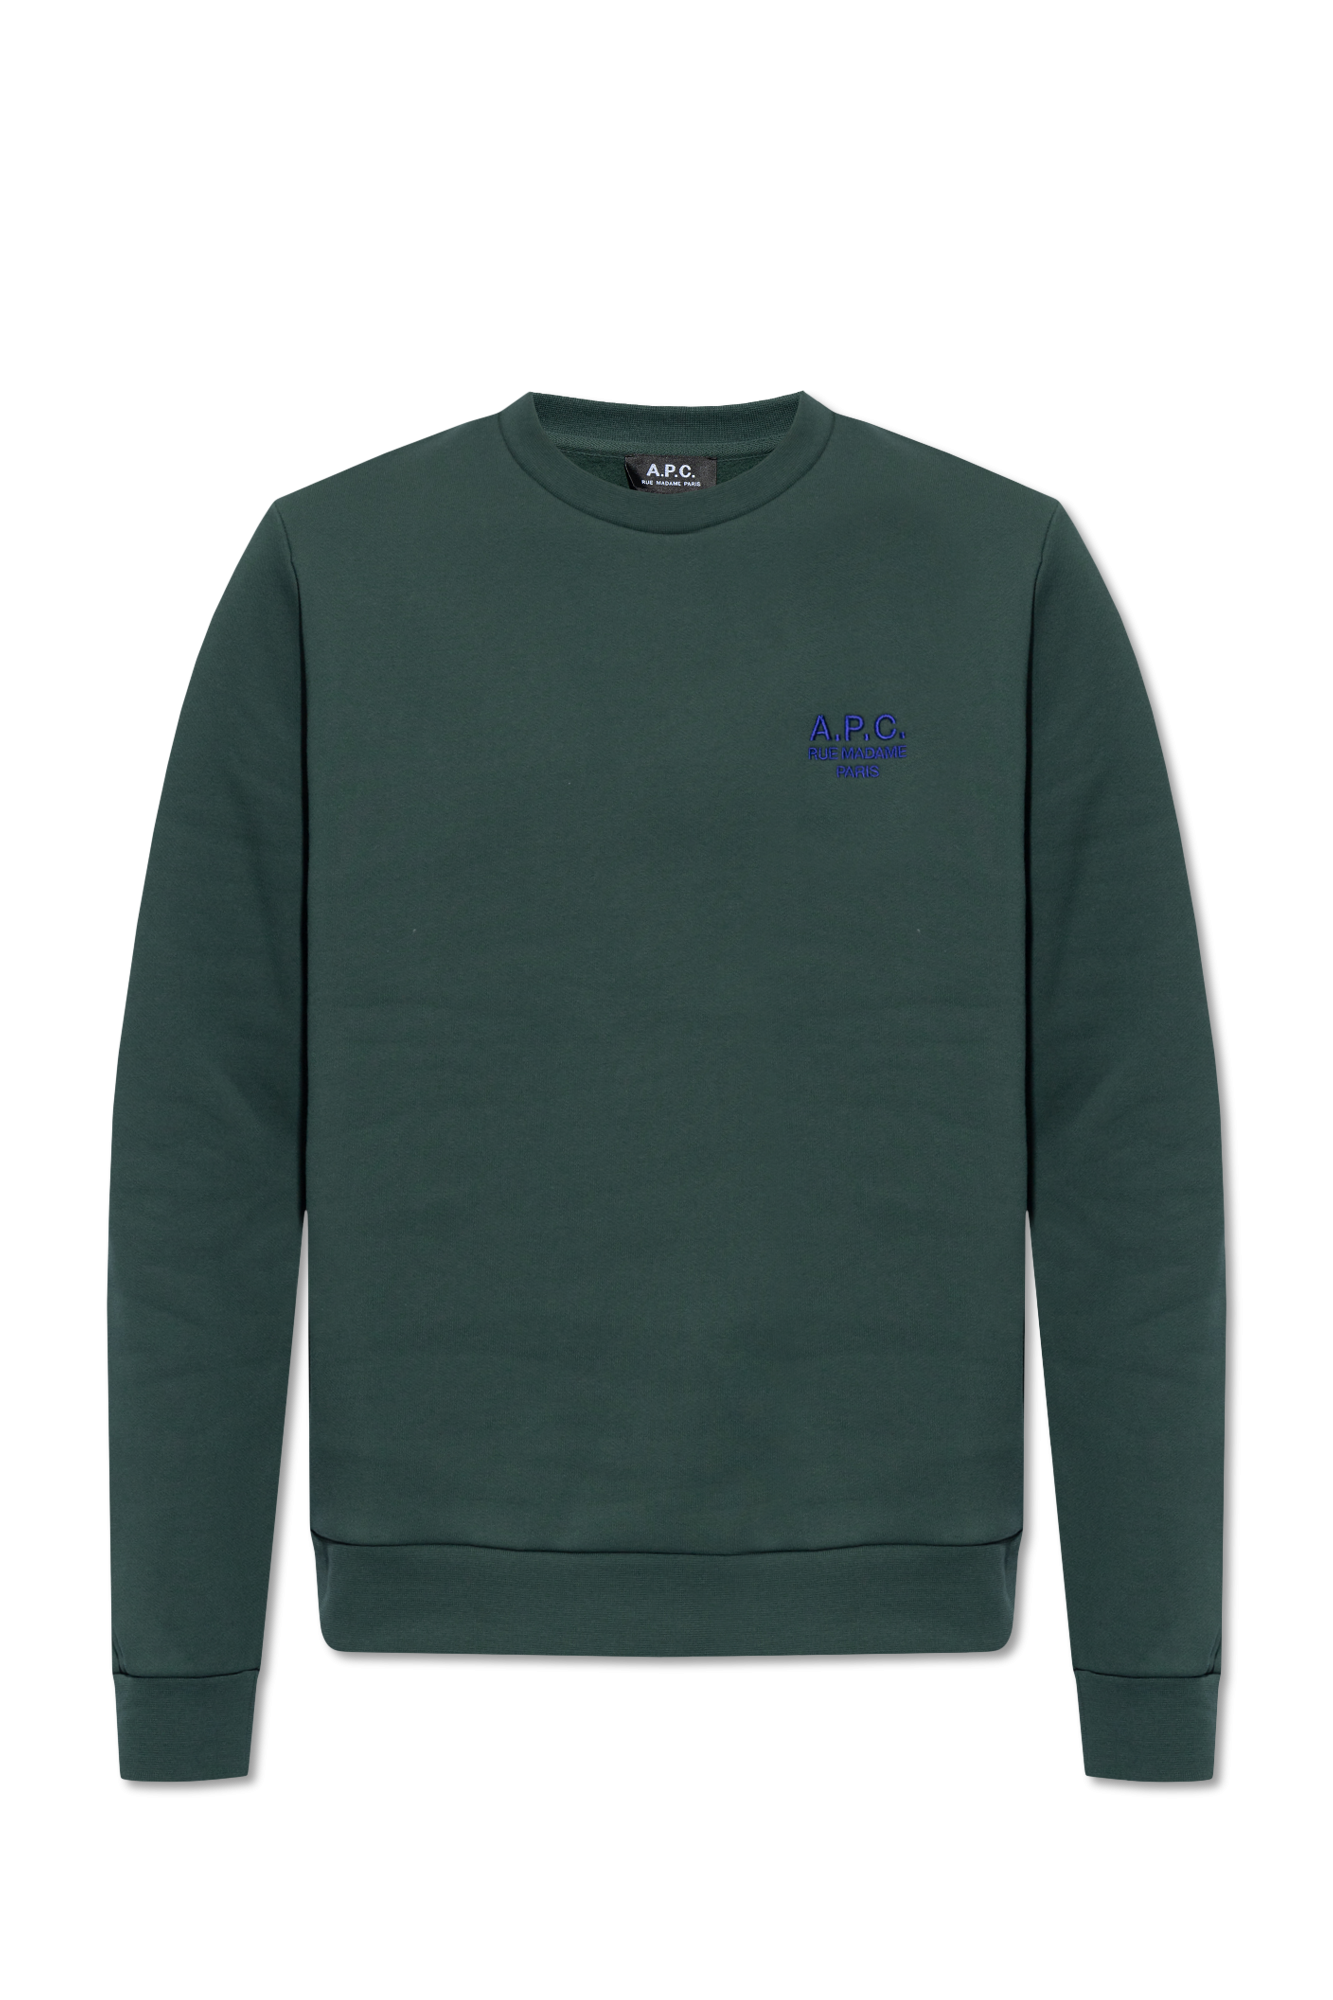 A.P.C. ‘Vert’ sweatshirt with logo